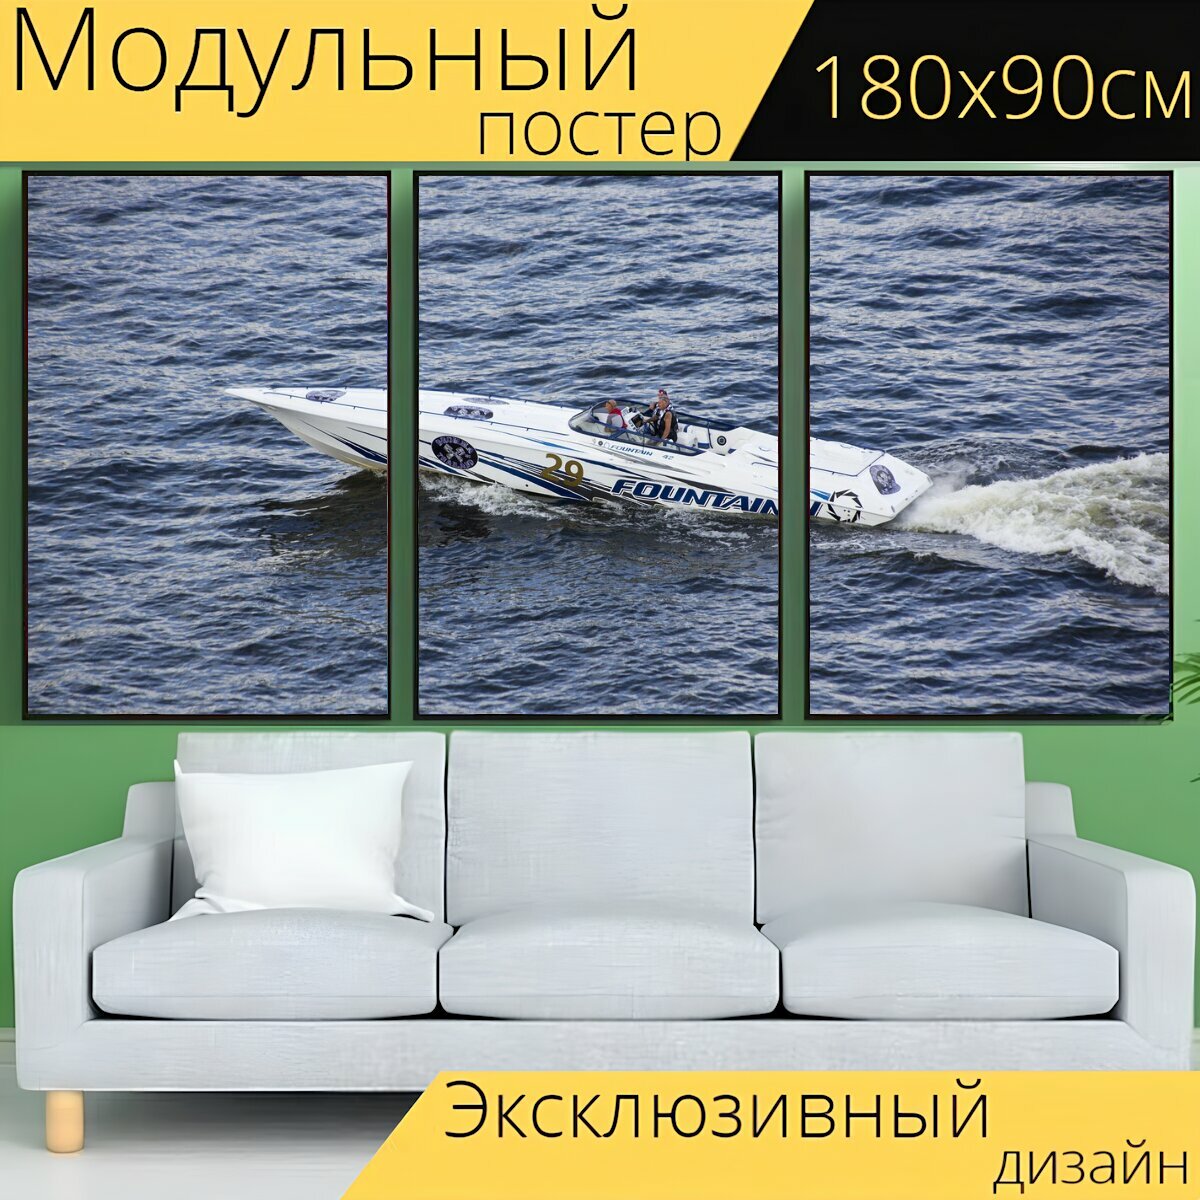 Модульный постер "Быстроходный катер, вода, моторная лодка" 180 x 90 см. для интерьера